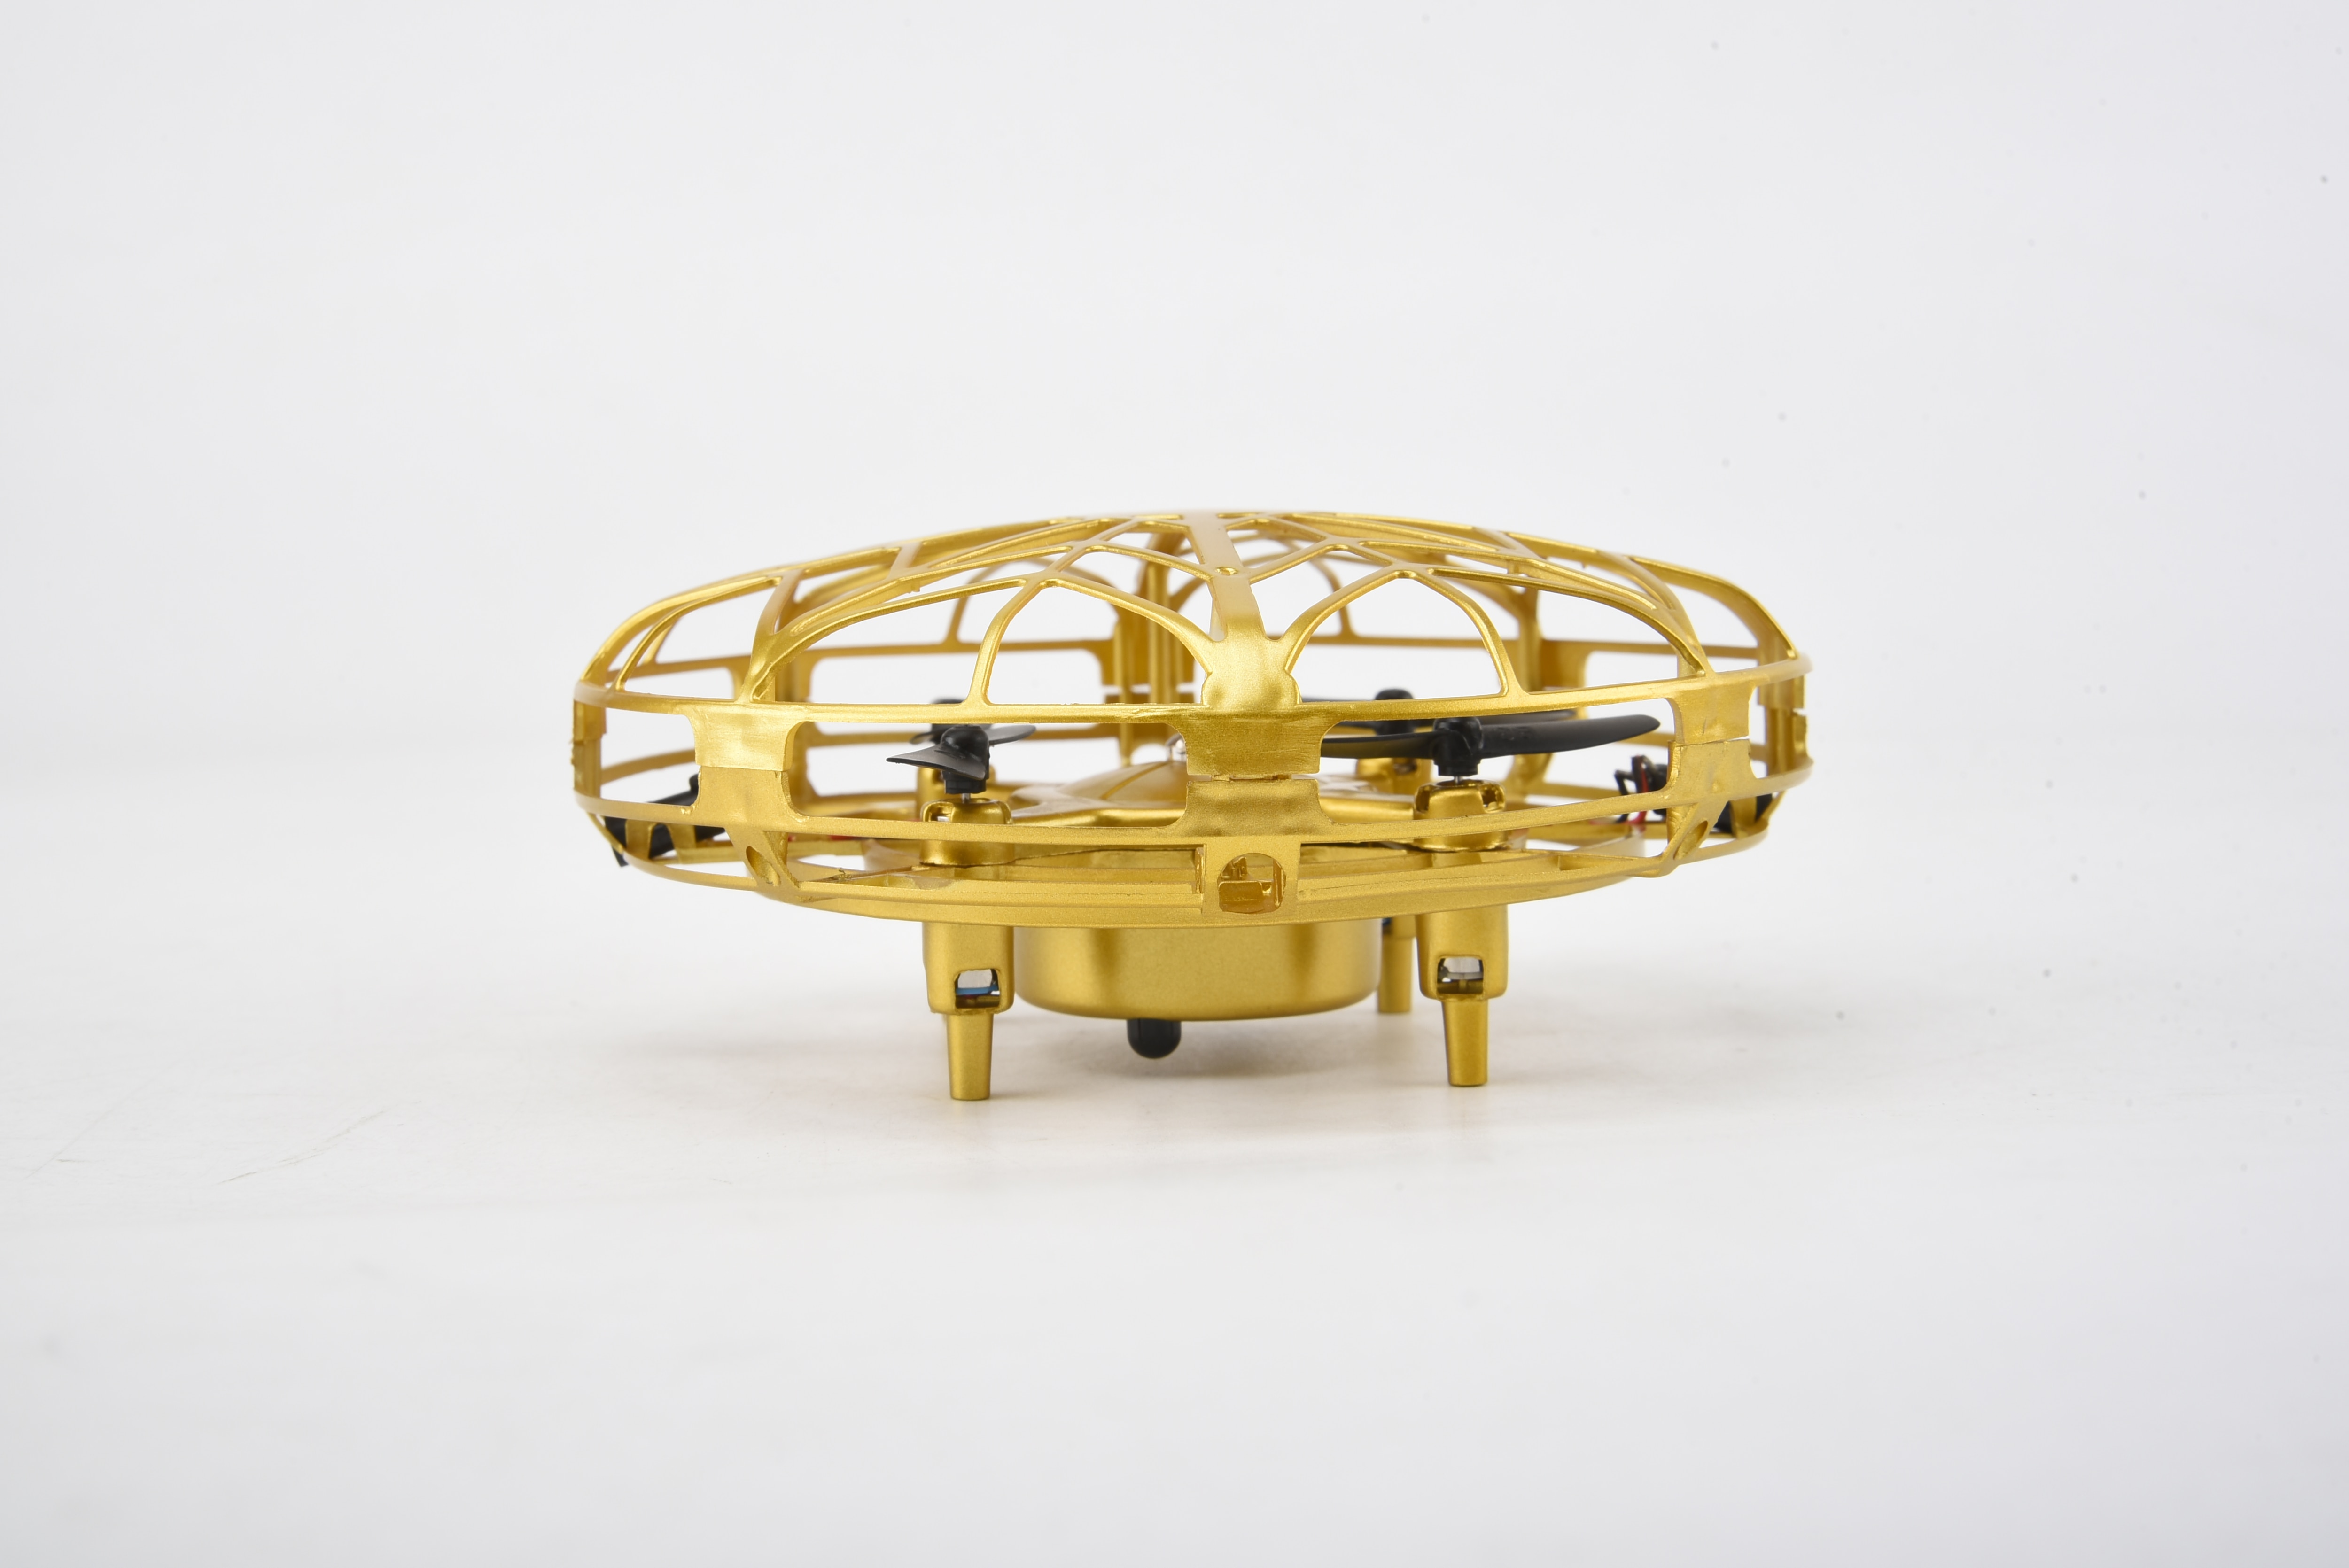 Smart Drone UFO, or